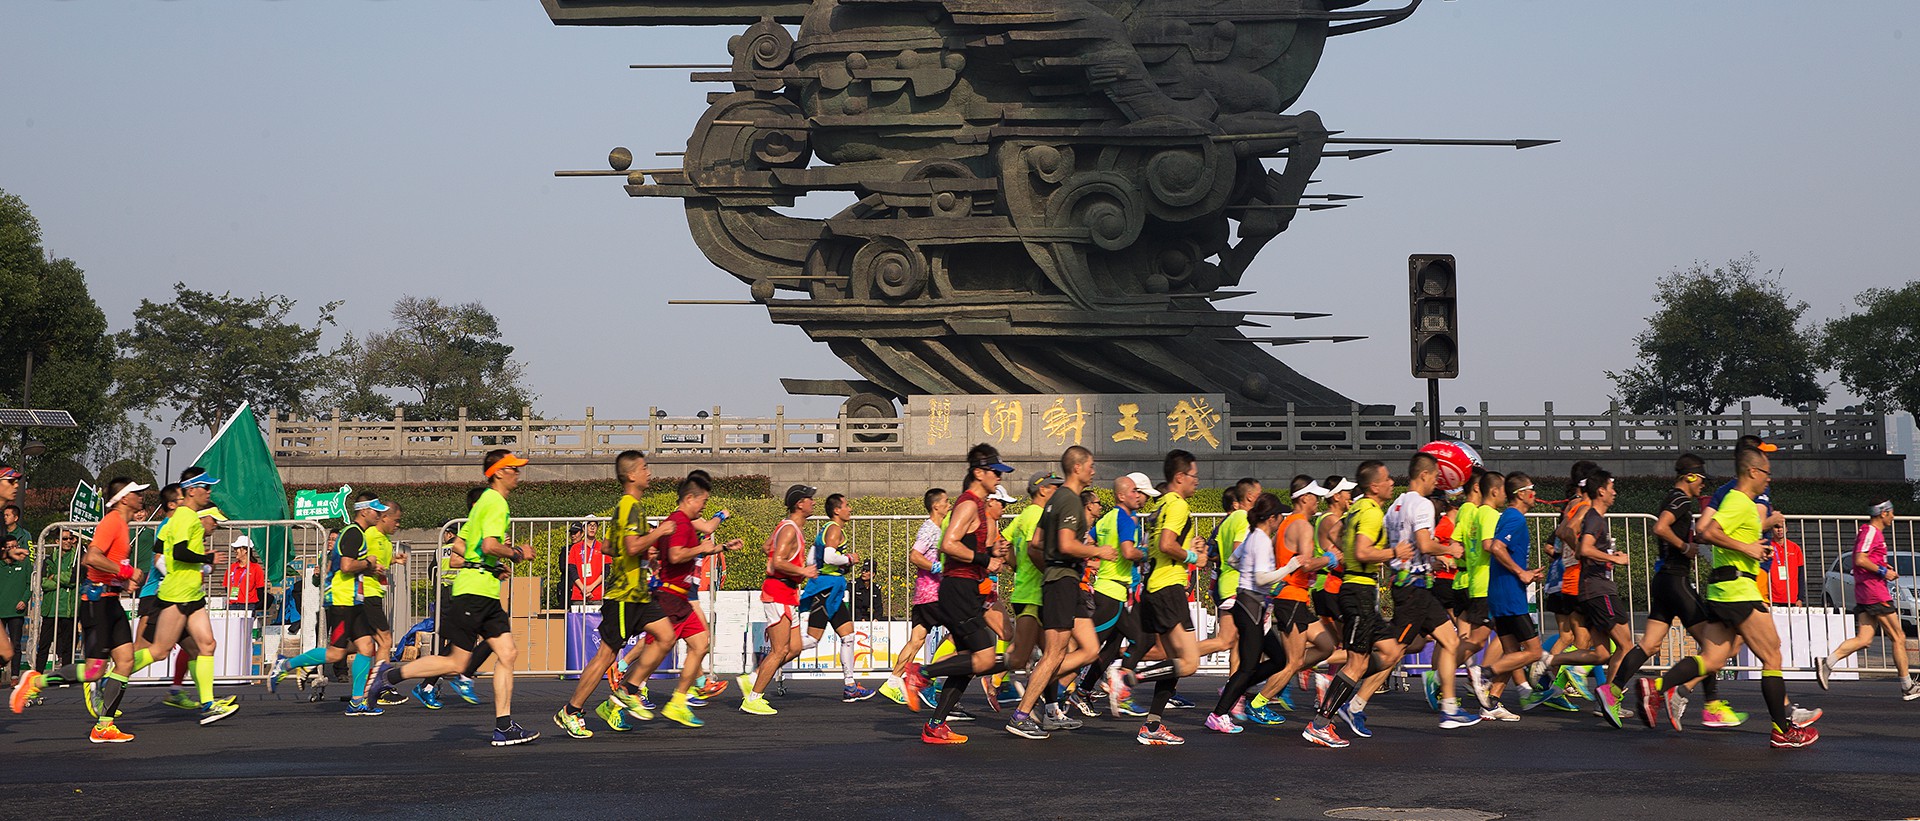 Chạy marathon gian lận bib không chính chủ buộc Trung Quốc dùng công nghệ nhận dạng đối phó  - Ảnh 2.